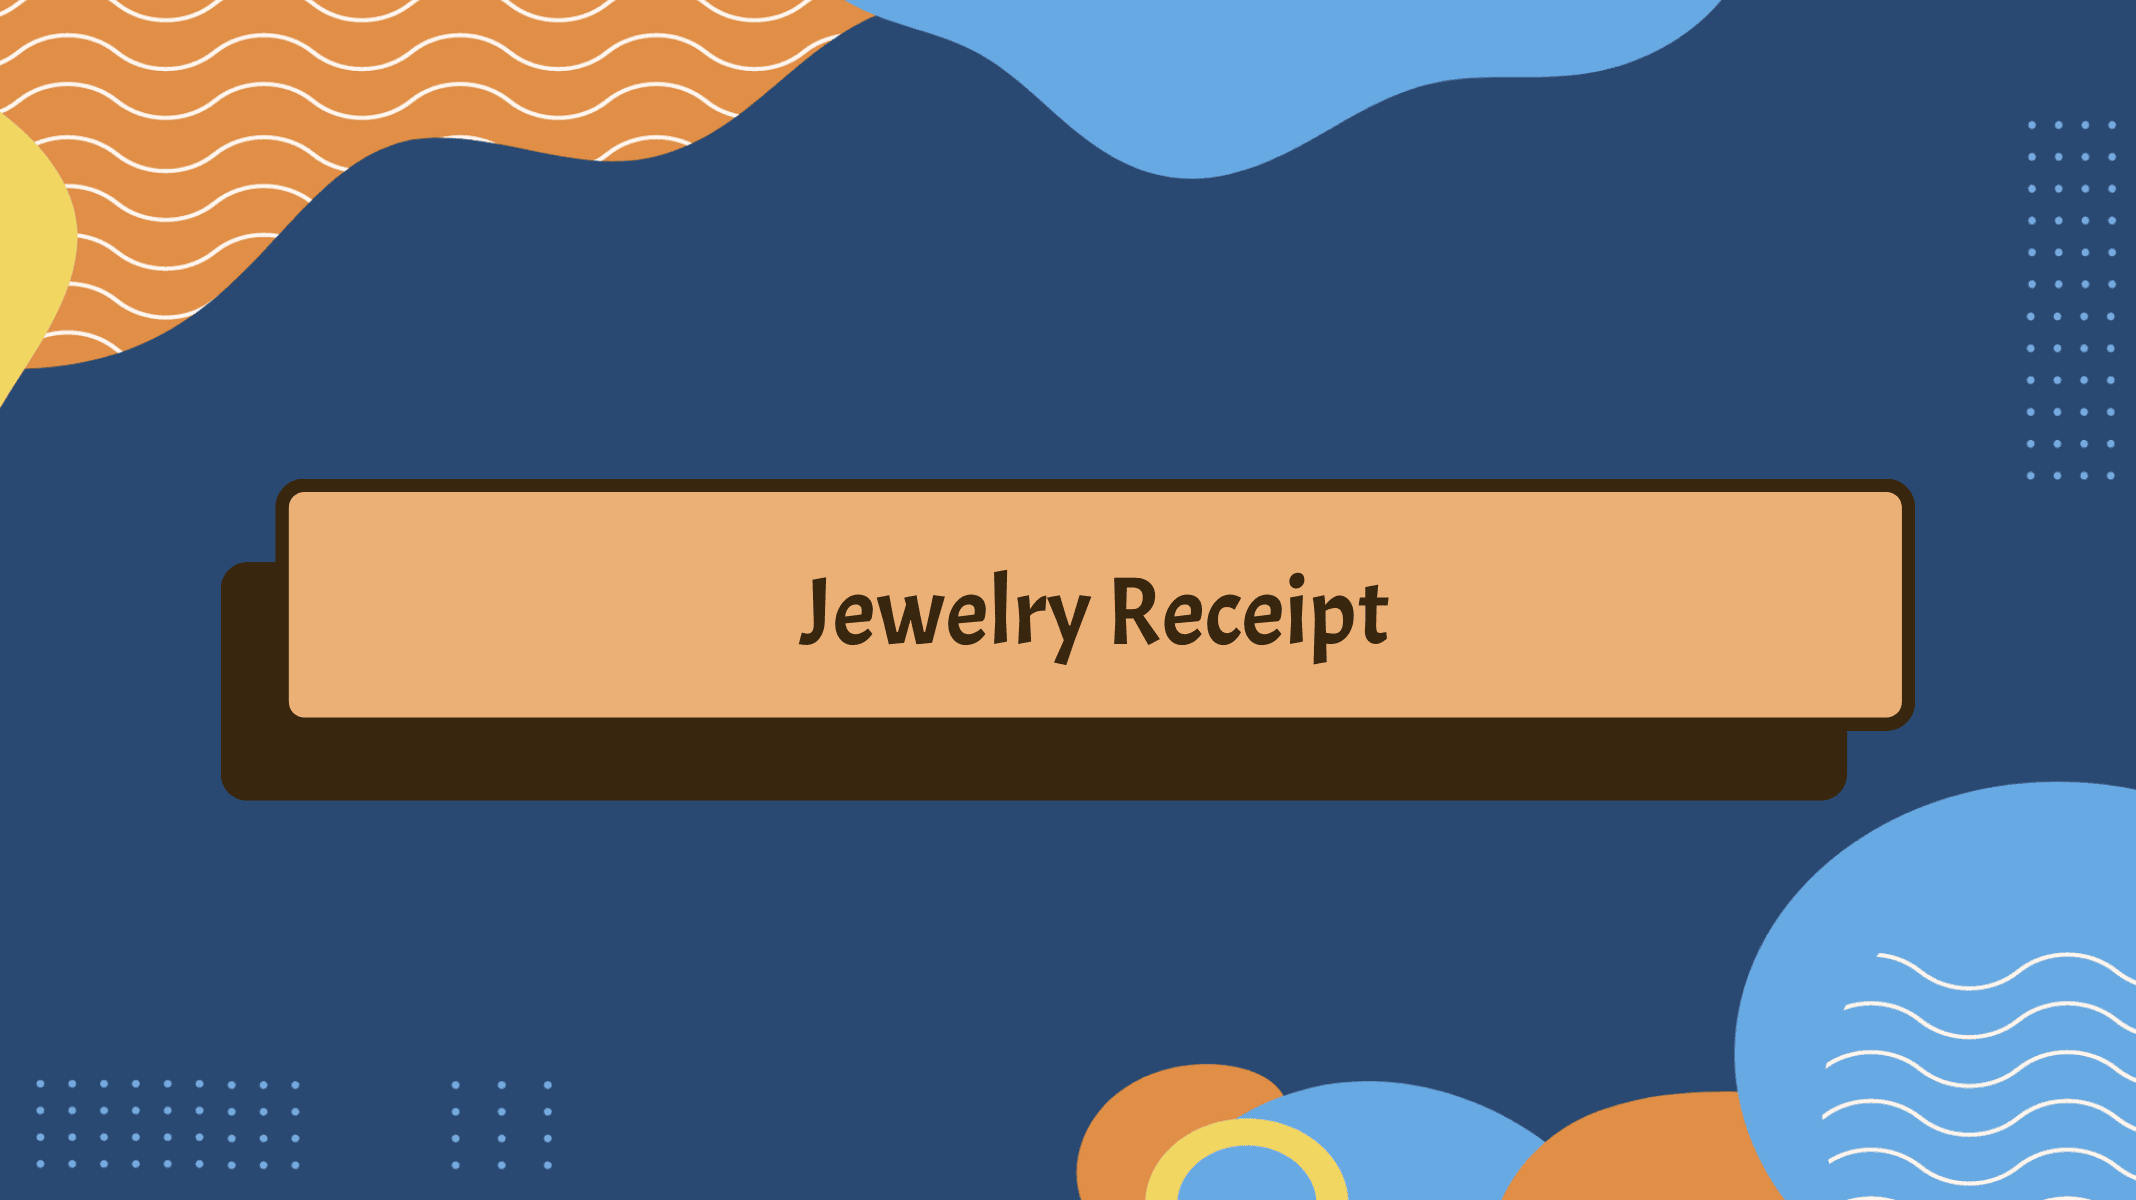 Jewelry receipt